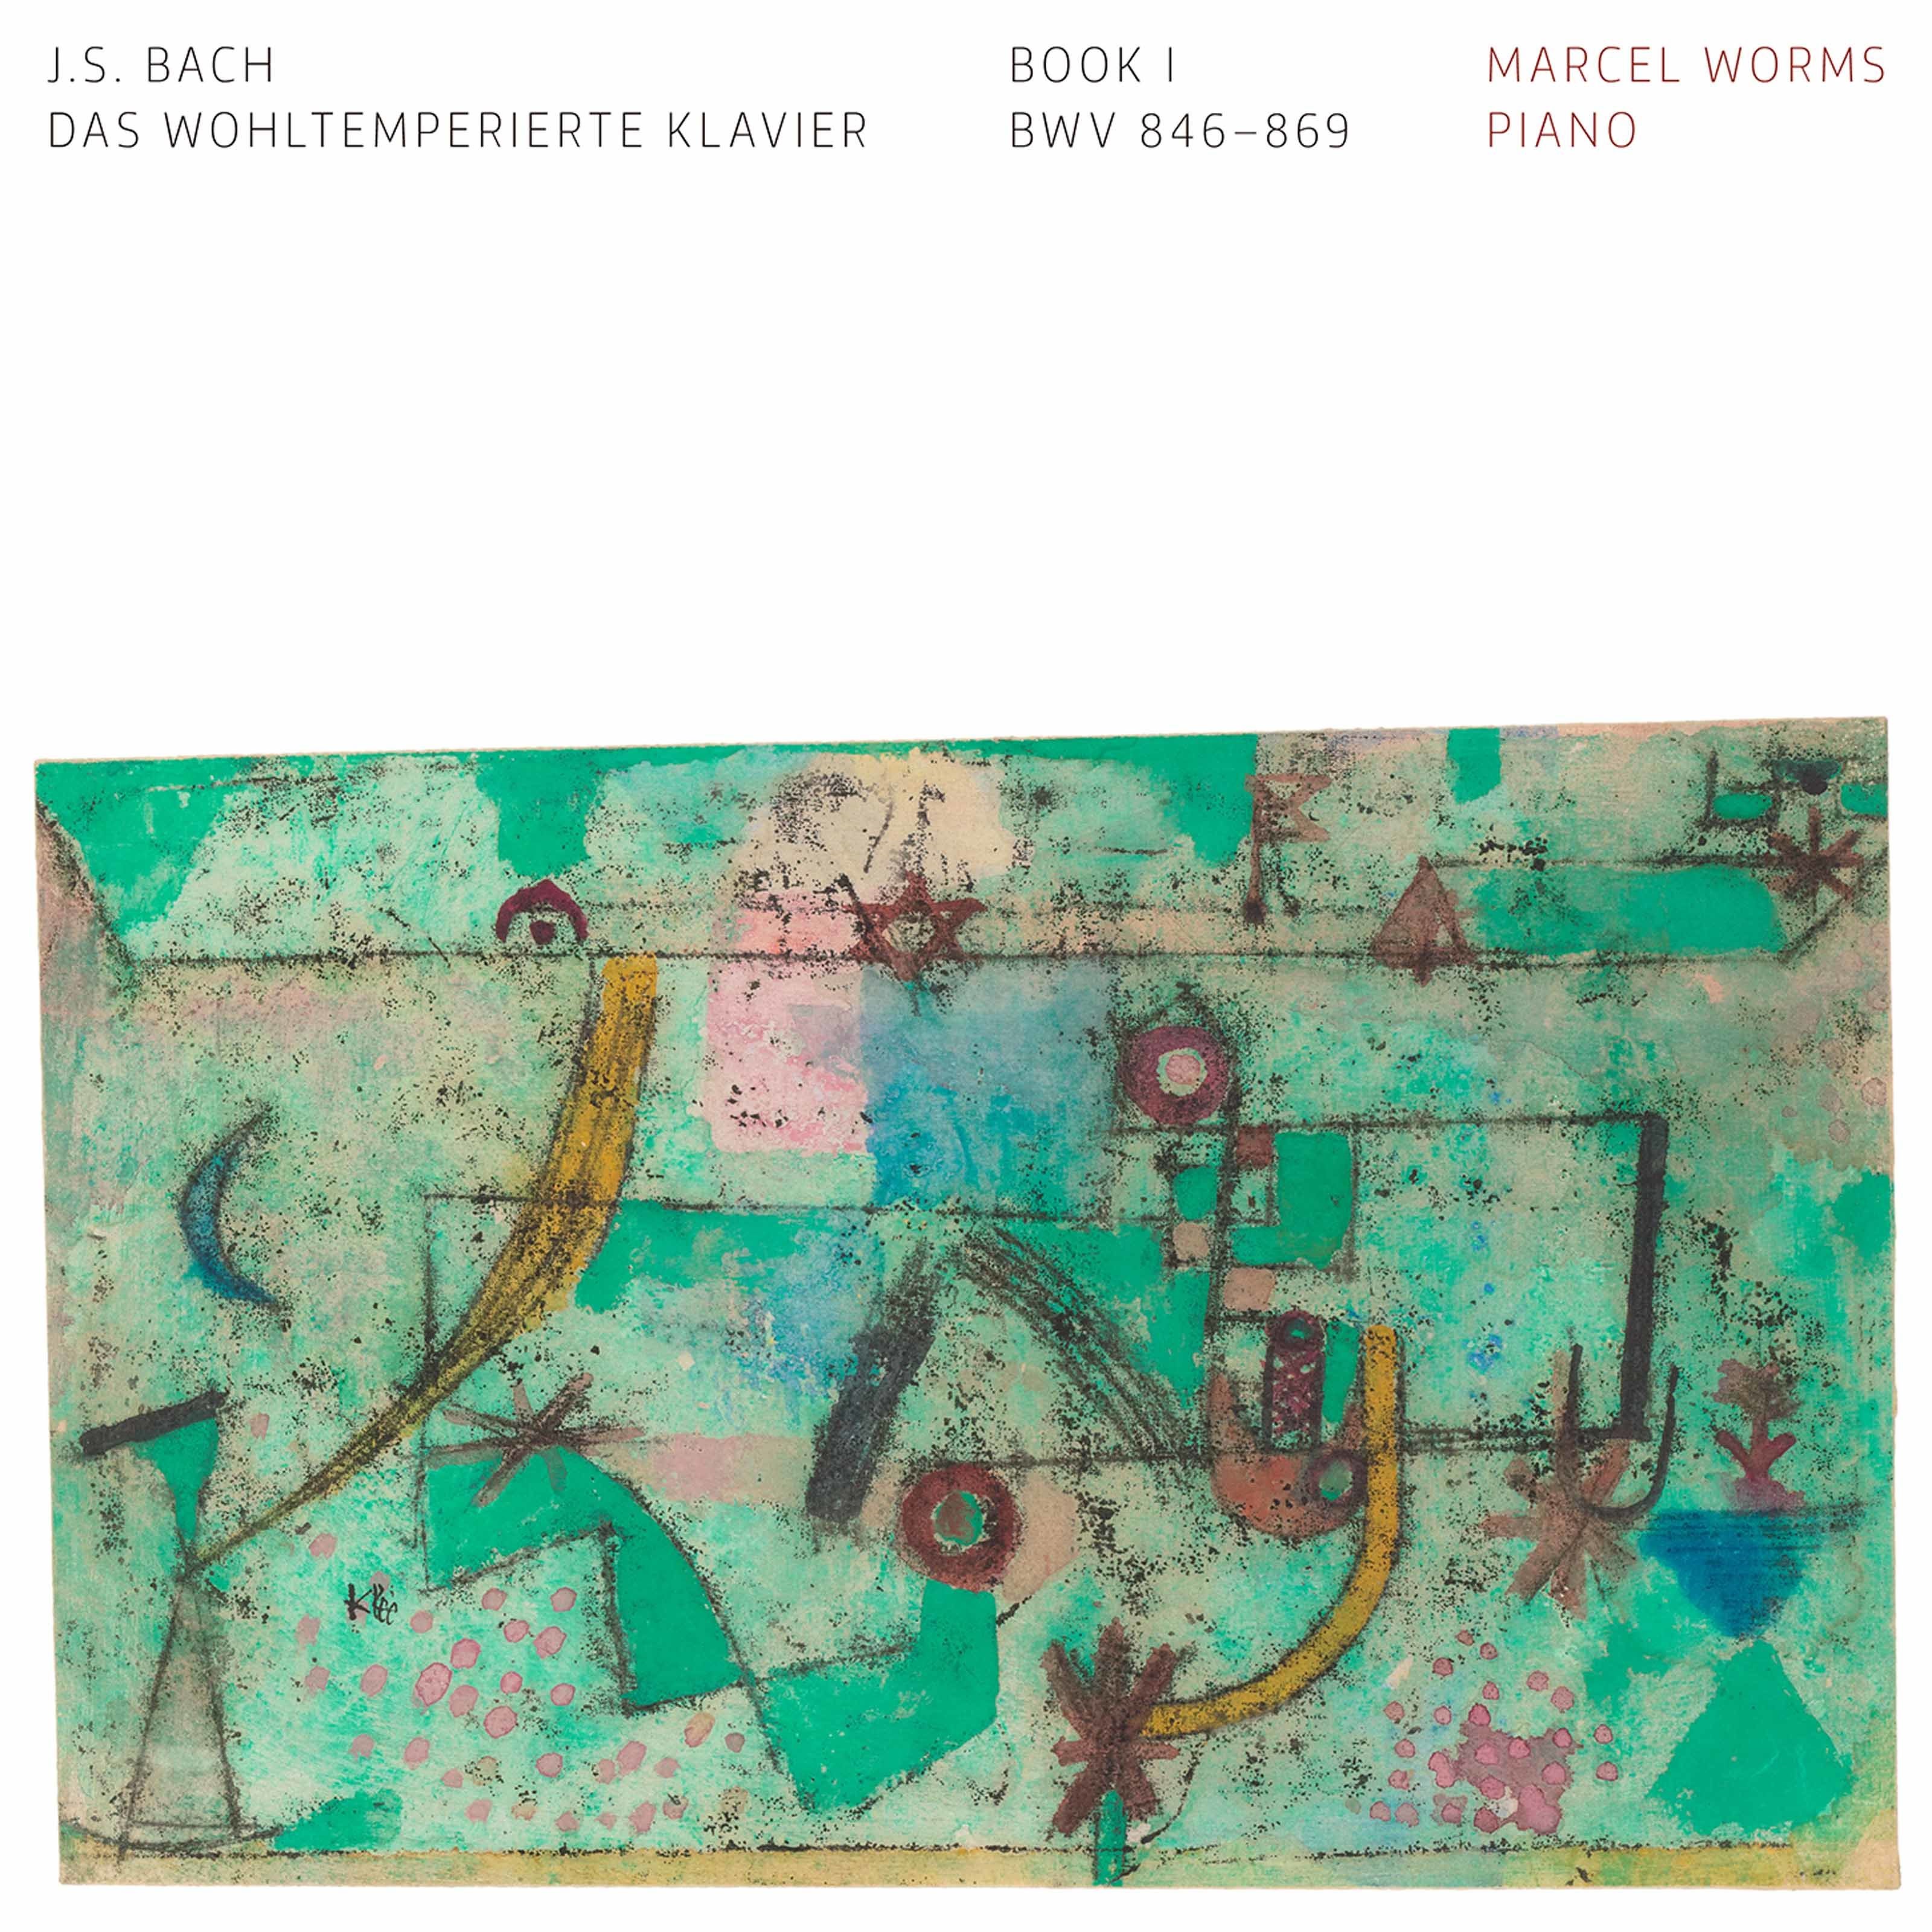 Marcel Worms - J.S. Bach: Das wohltemperierte Klavier, Book 1 (2020) [FLAC 24bit/96kHz]